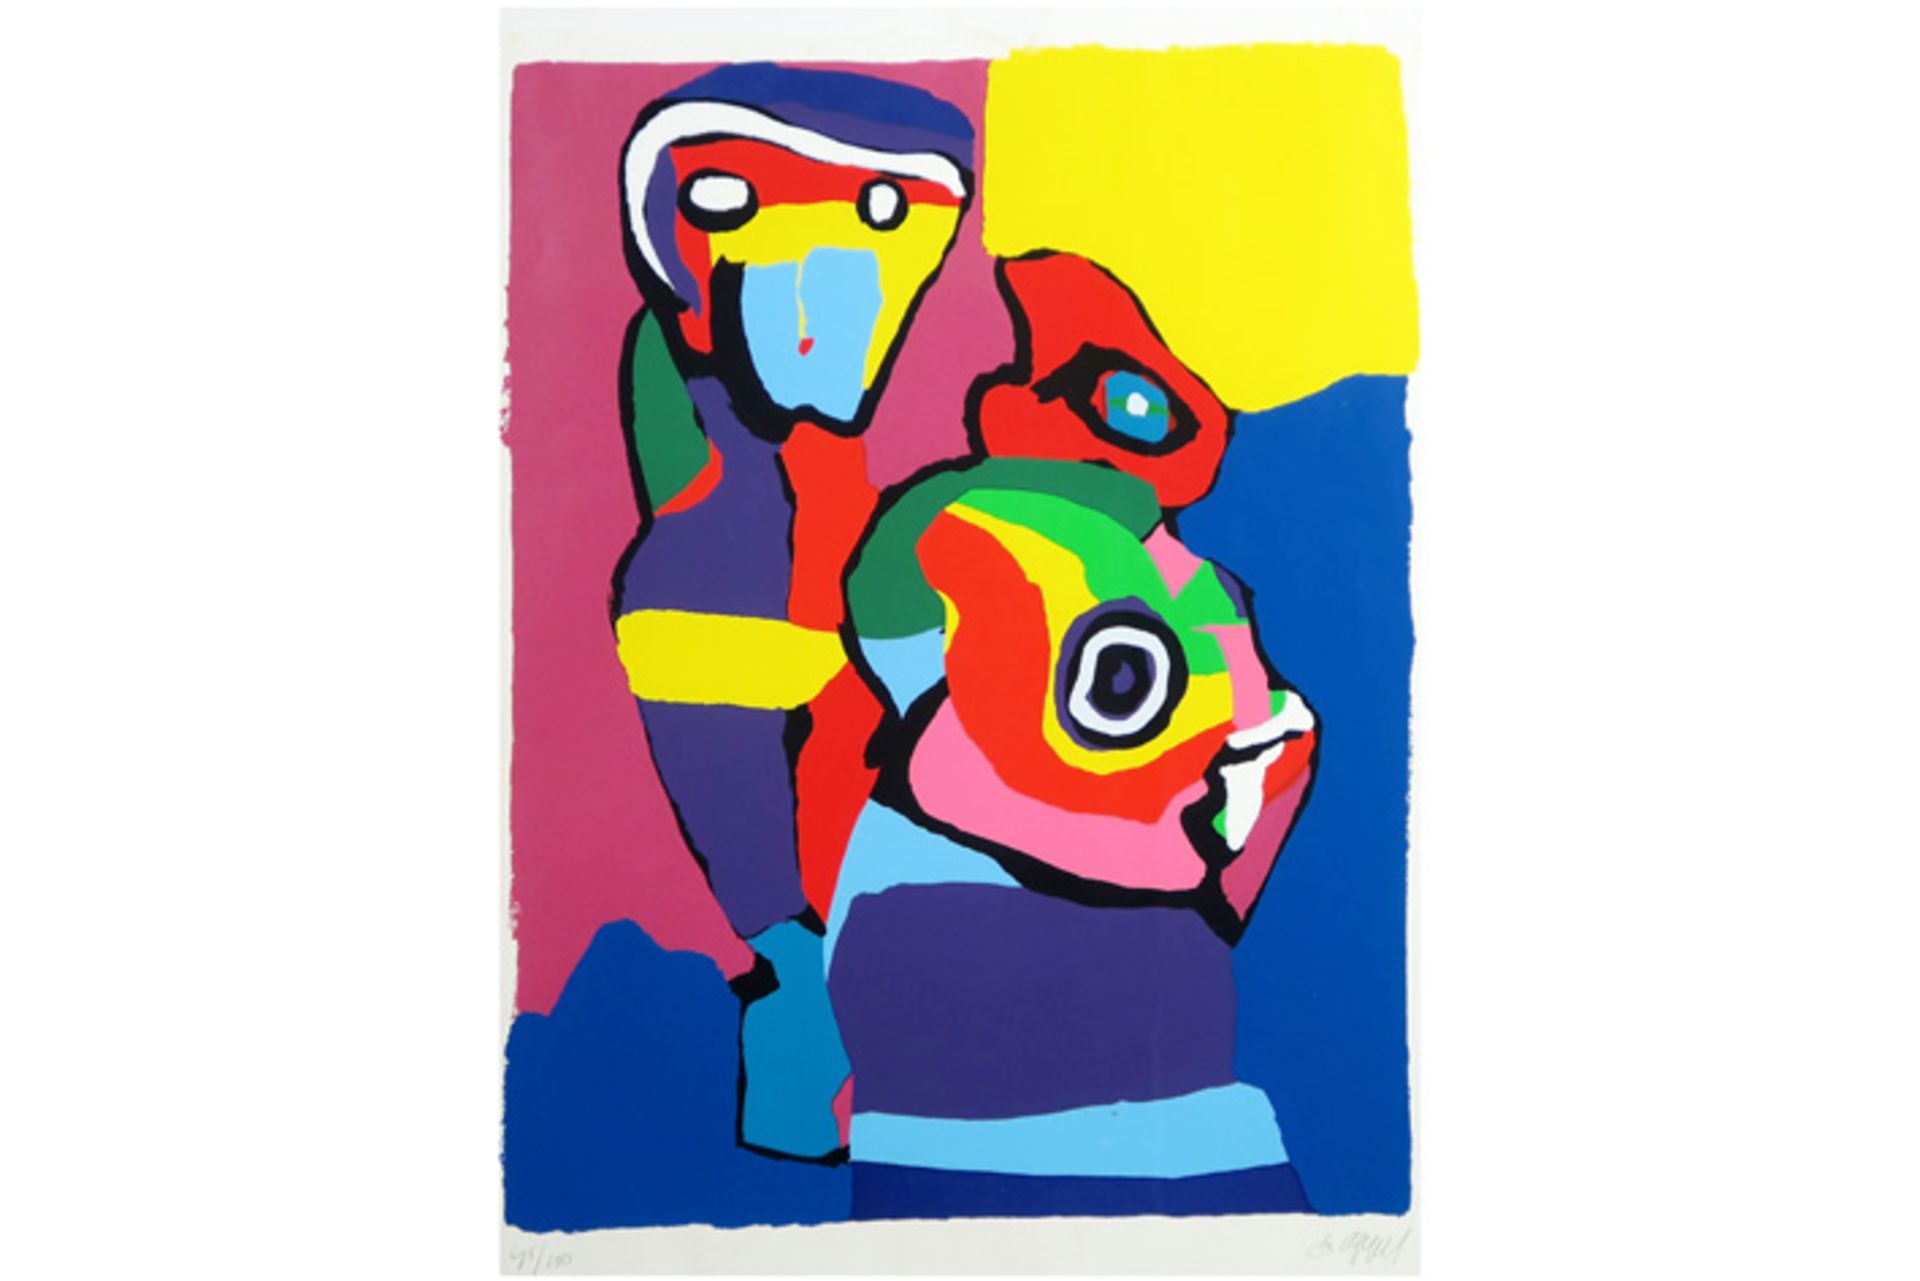 APPEL KAREL (1921 - 2006) kleurlitho n° 45/100 : "Kleurrijke compositie met figuren" - 67 x 51